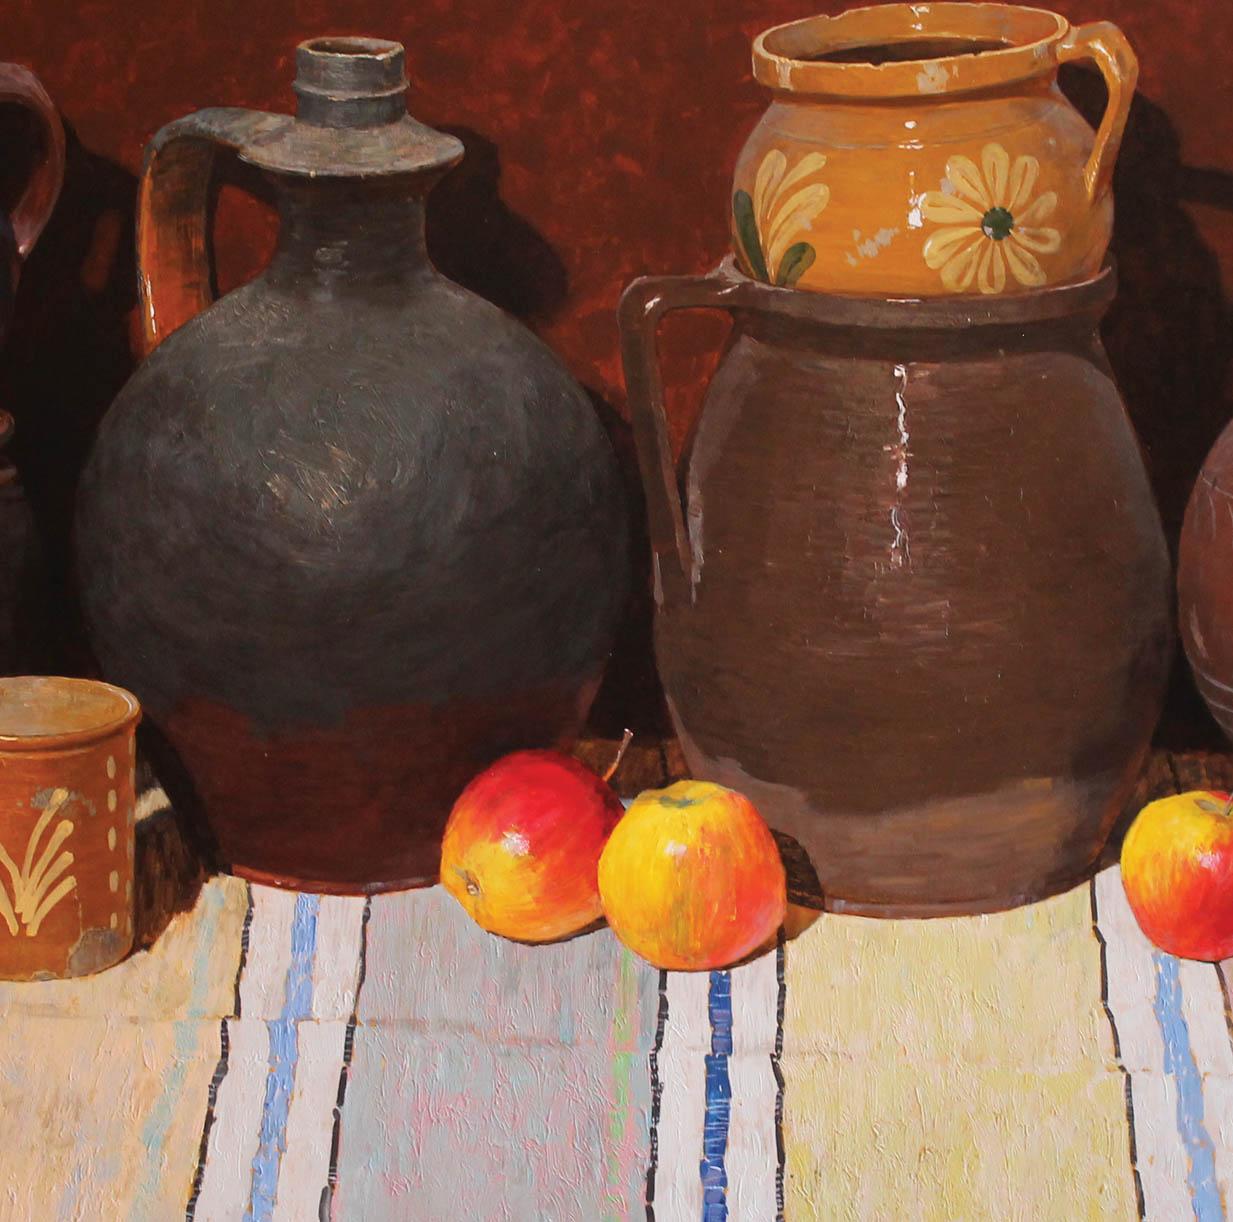 Keramik- und Äpfel (Braun), Still-Life Painting, von Vladimir Kovalov